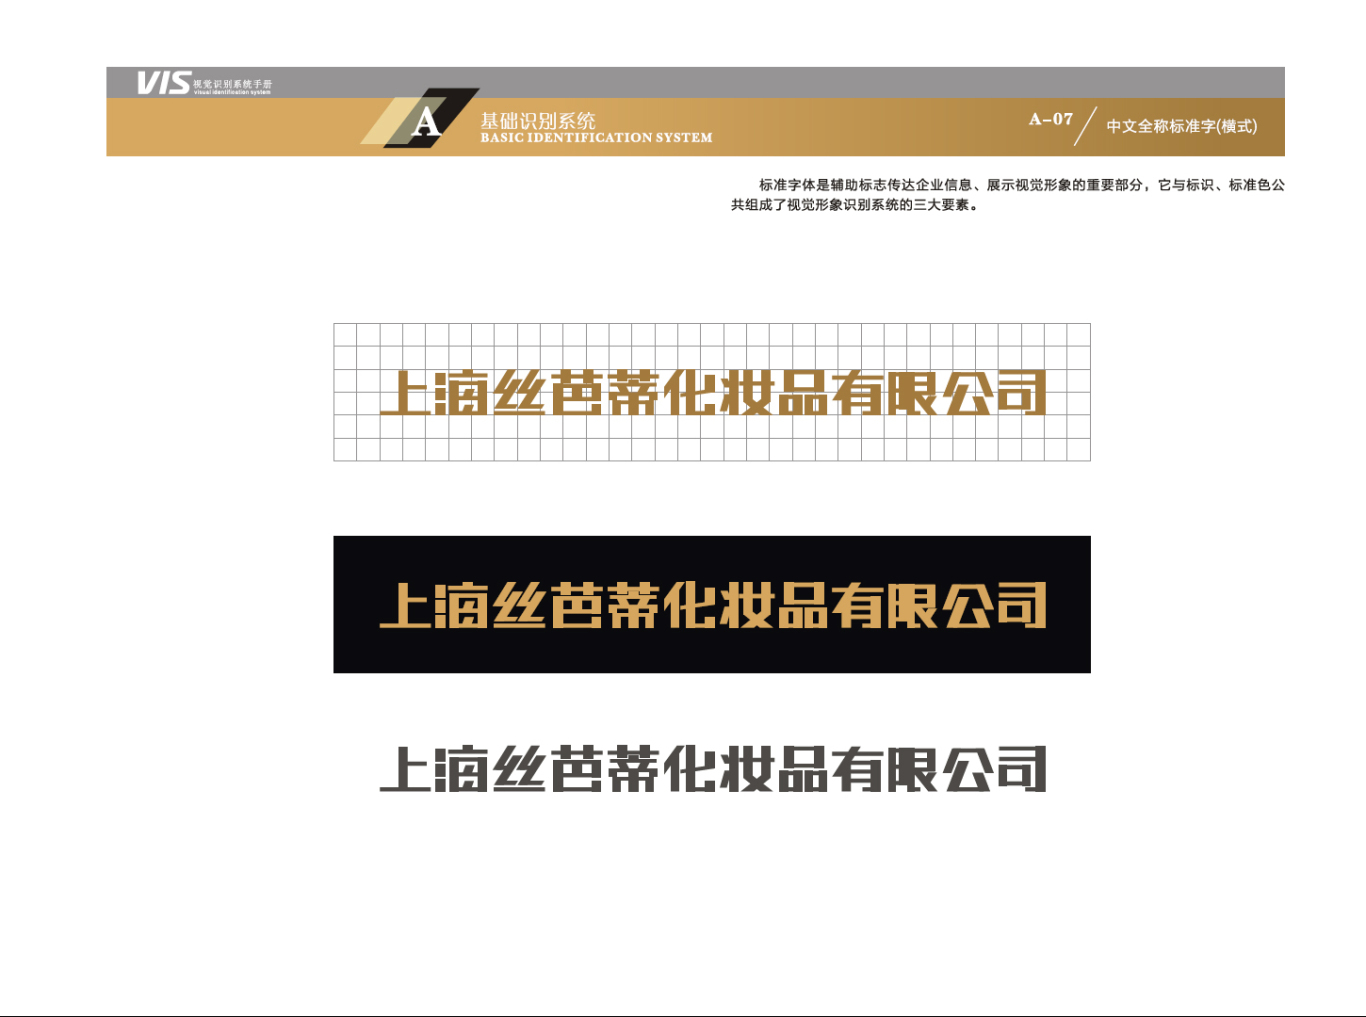 上海丝芭蒂化妆品有限公司-VIS视觉识别系统图6